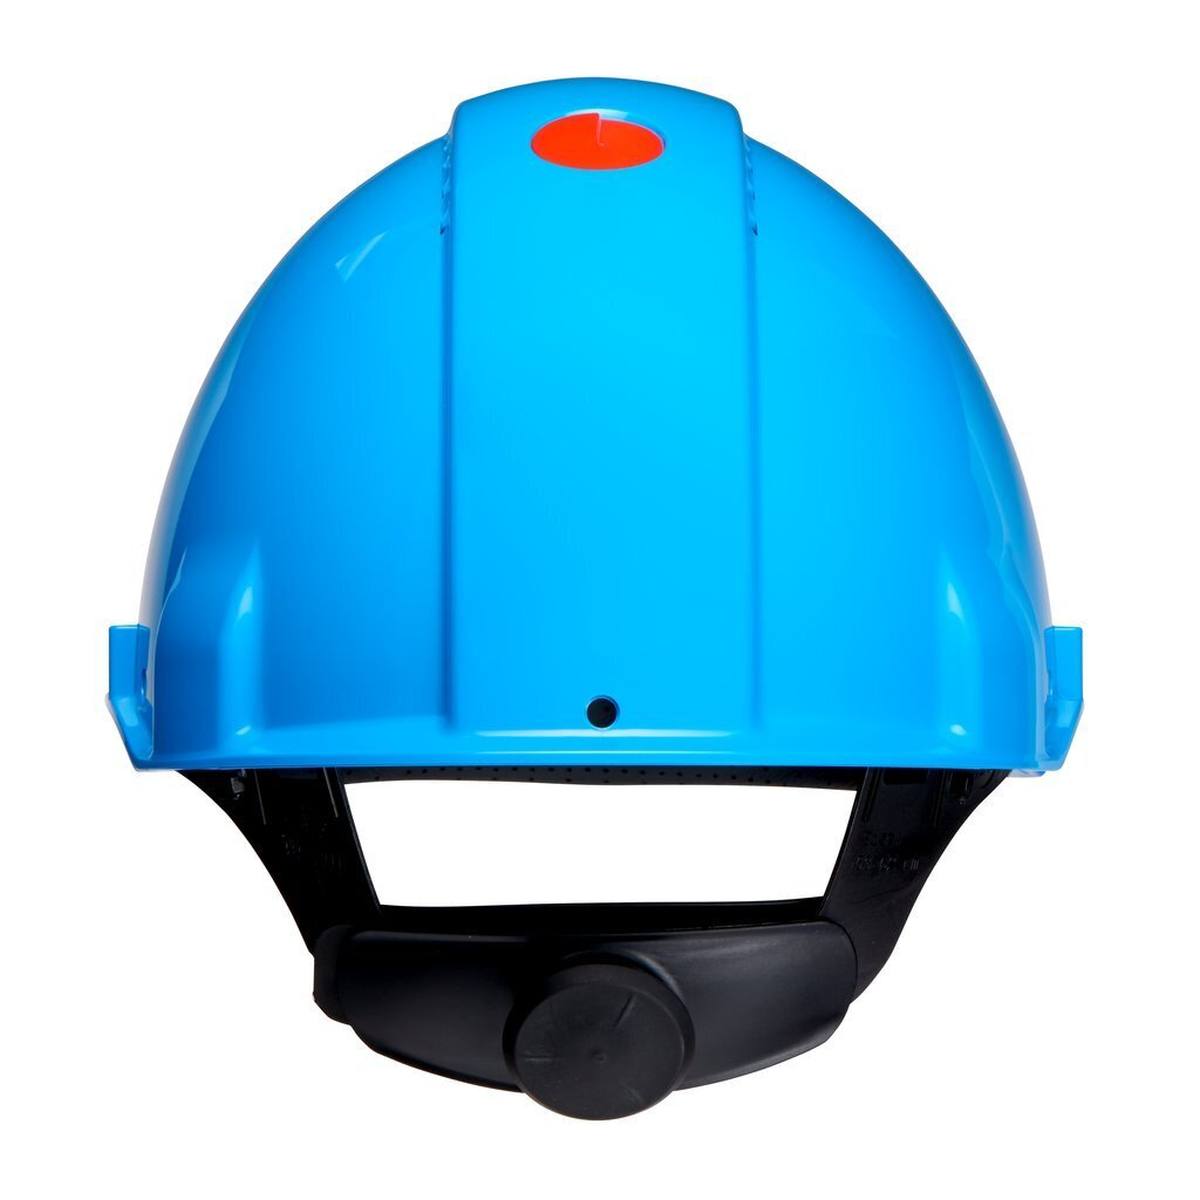 elmetto di sicurezza 3M G3000 G30NUB di colore blu, ventilato, con unghia, cricchetto e cinturino in plastica per saldatura